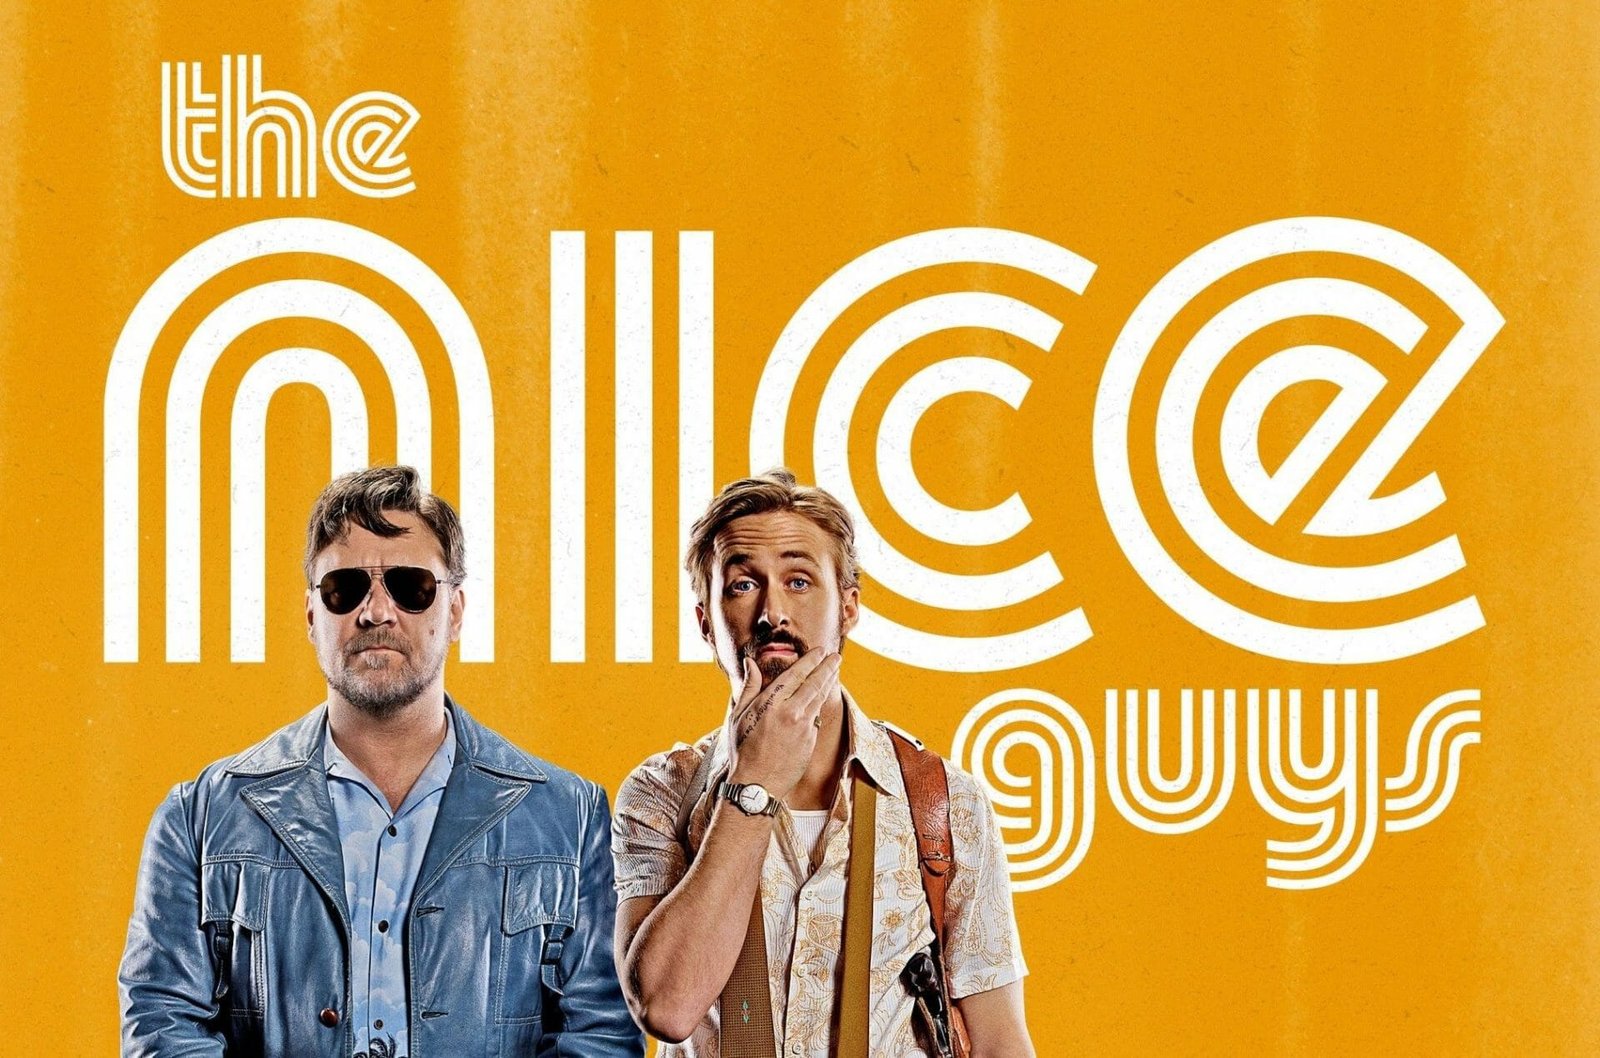 Best movies on Hulu: The Nice Guys